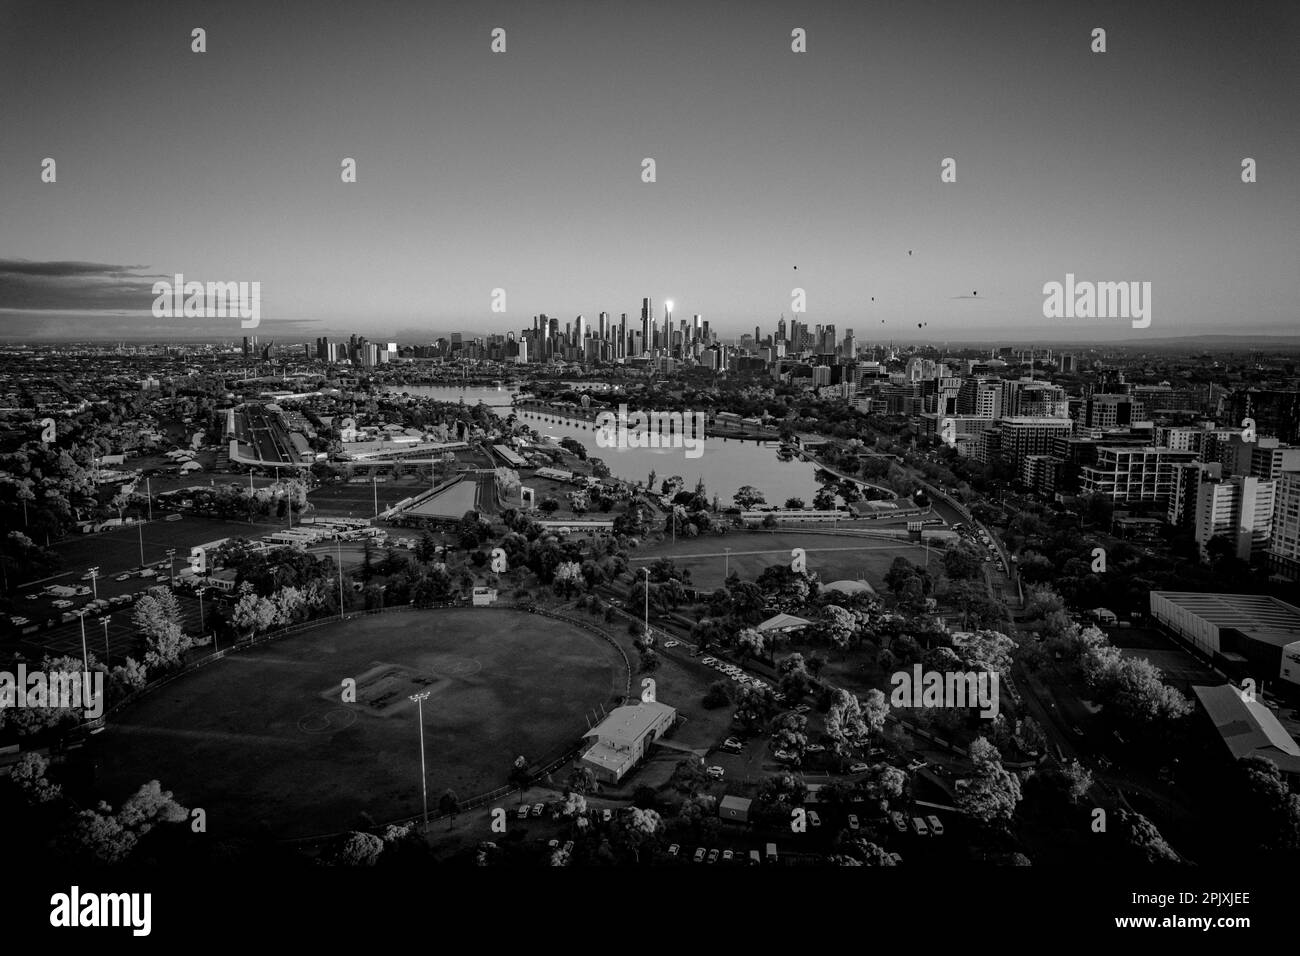 Vue aérienne en niveaux de gris du parc Lake Albert et de la ville de Melbourne, en Australie Banque D'Images